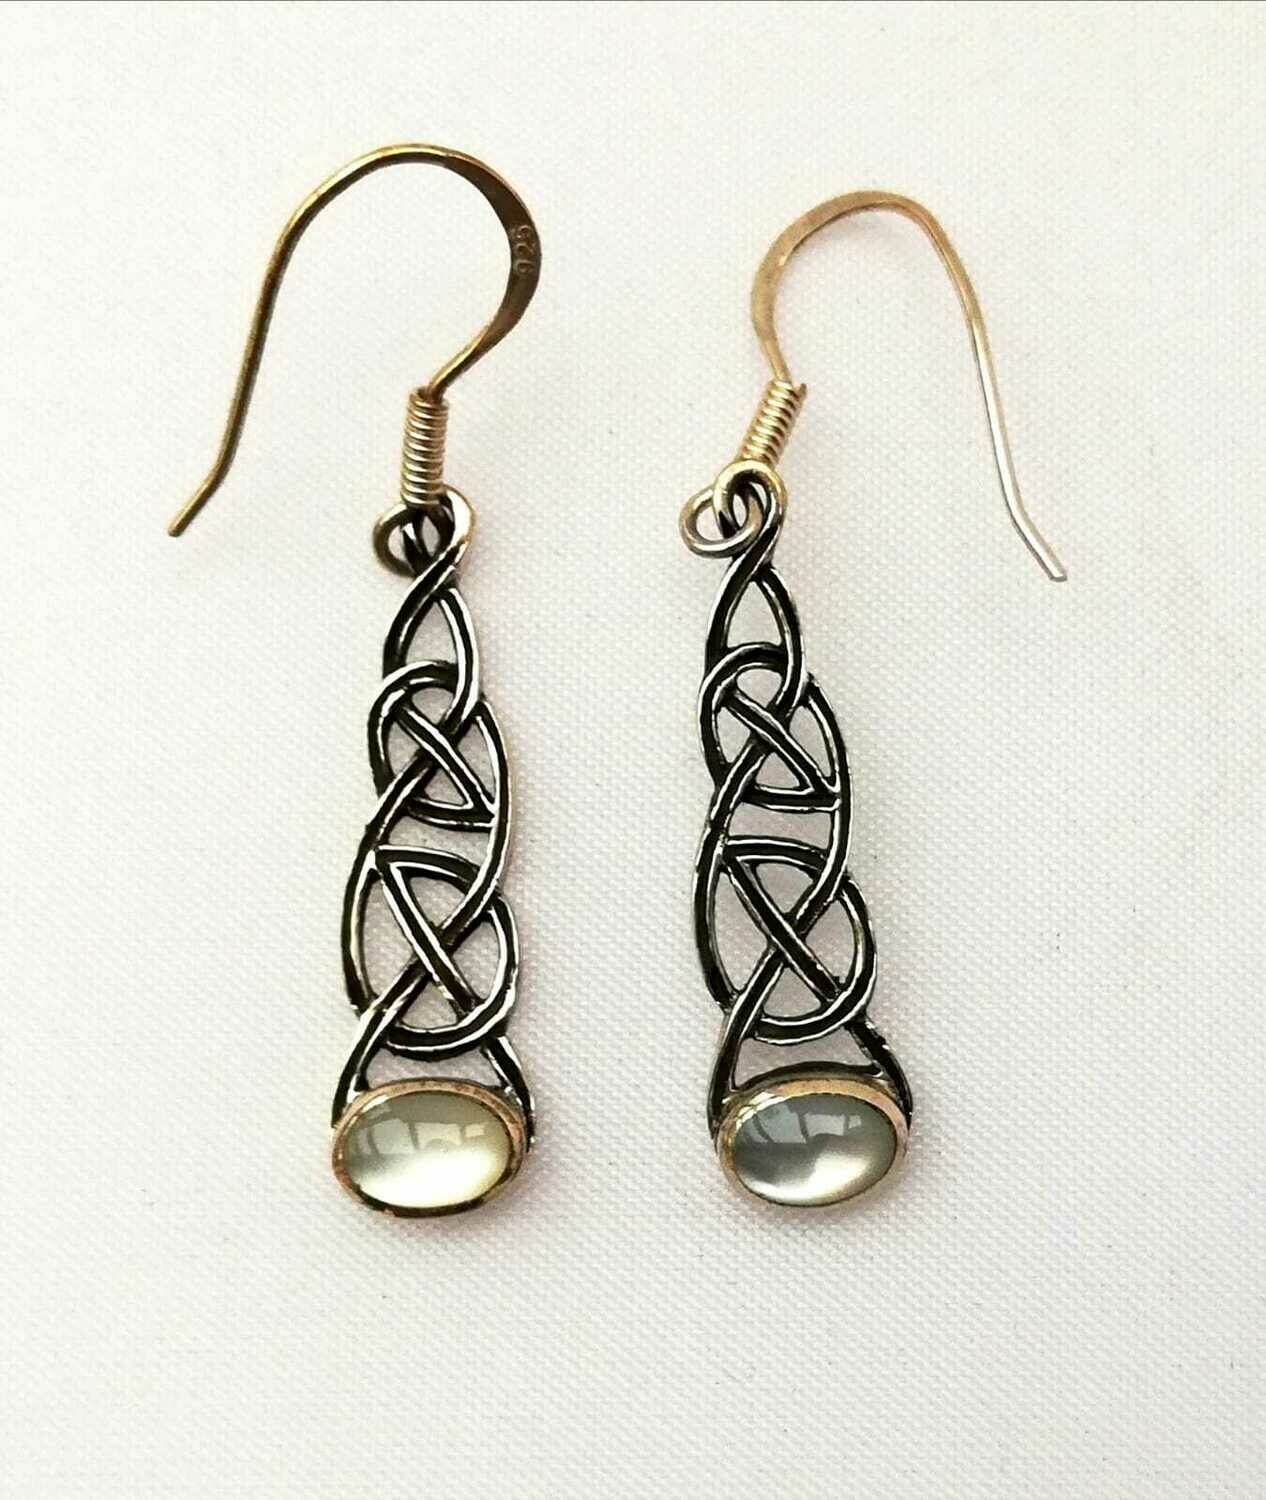 Echt Silber,Keltische Knoten Ohrringe mit weissem Perlmut, Paarpreis